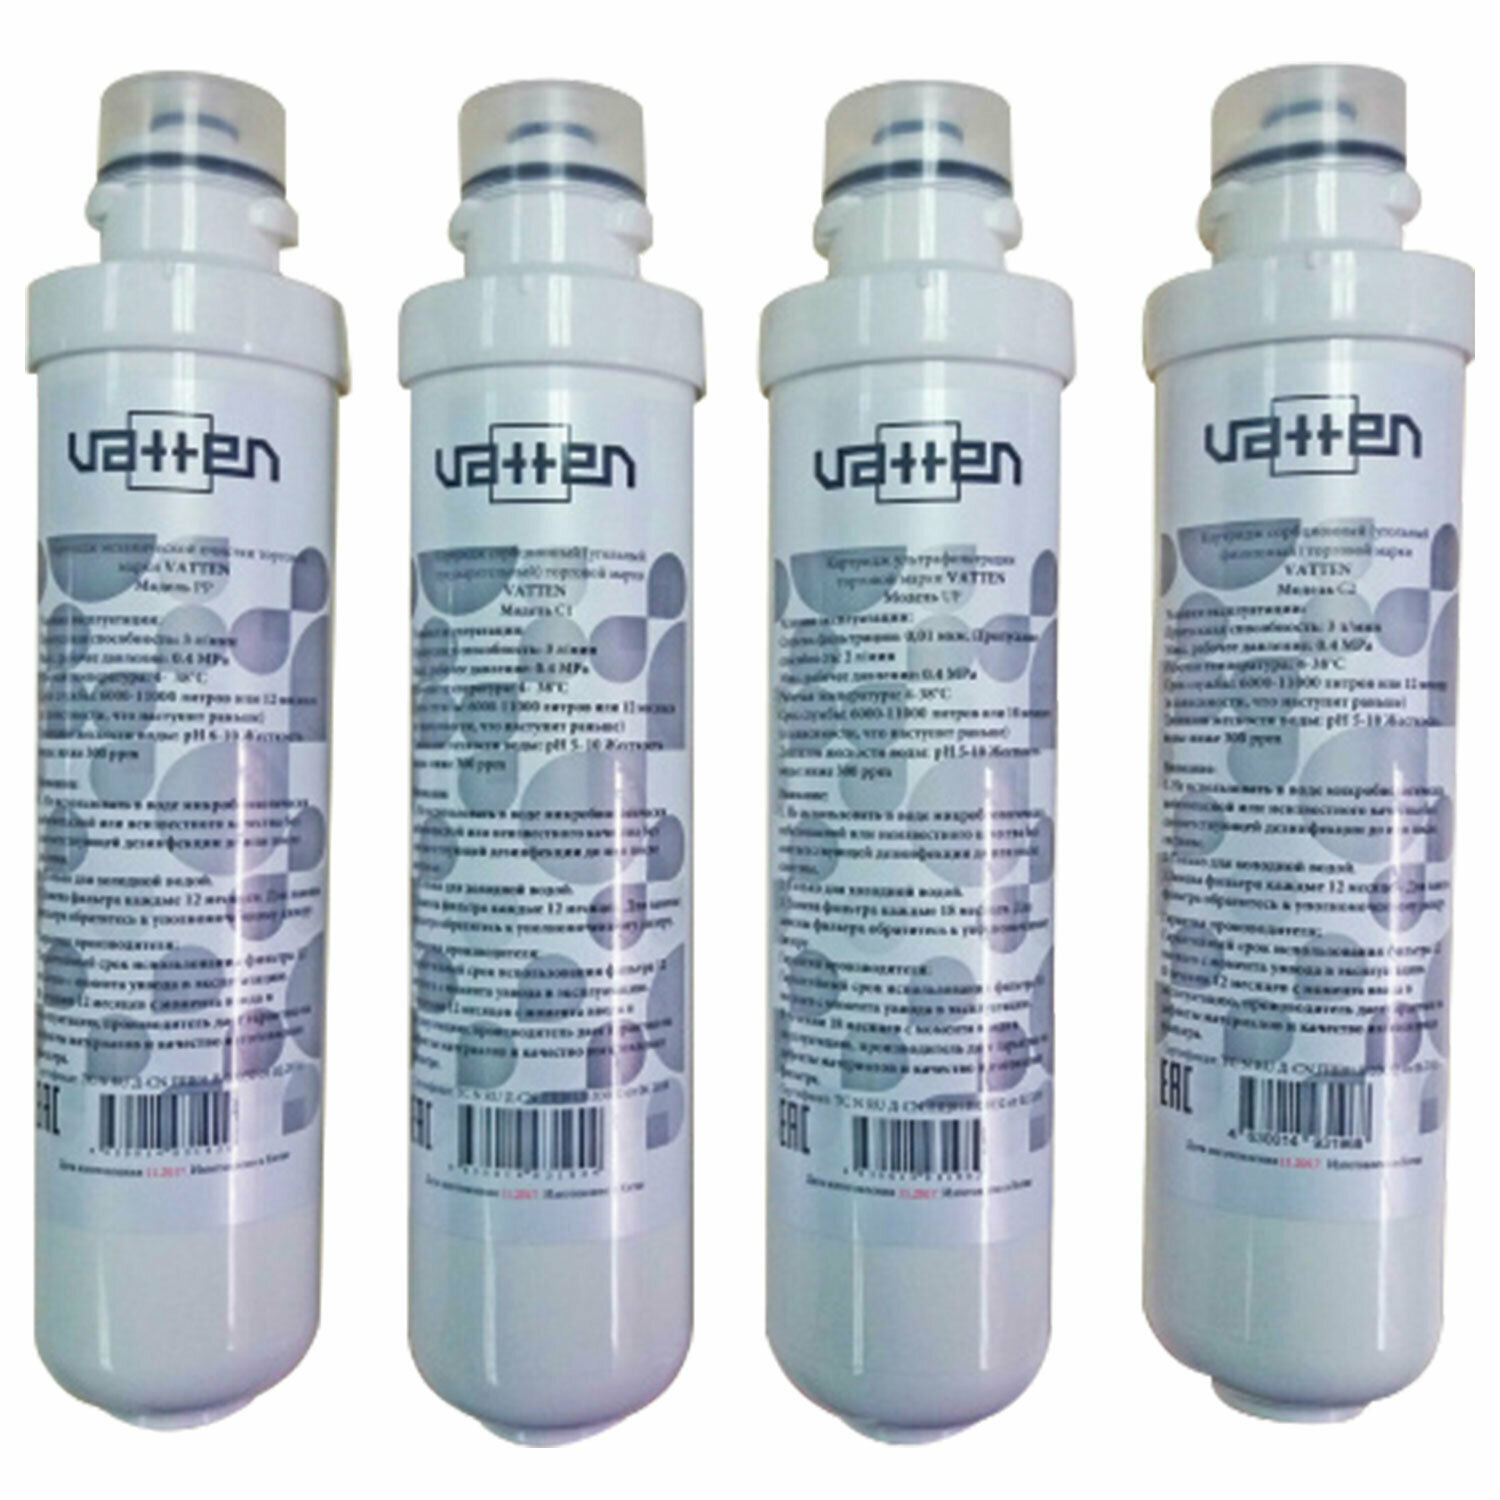 Фильтры для воды для пурифайера VATTEN 12 дюймов ресурс 11000 л 4 шт